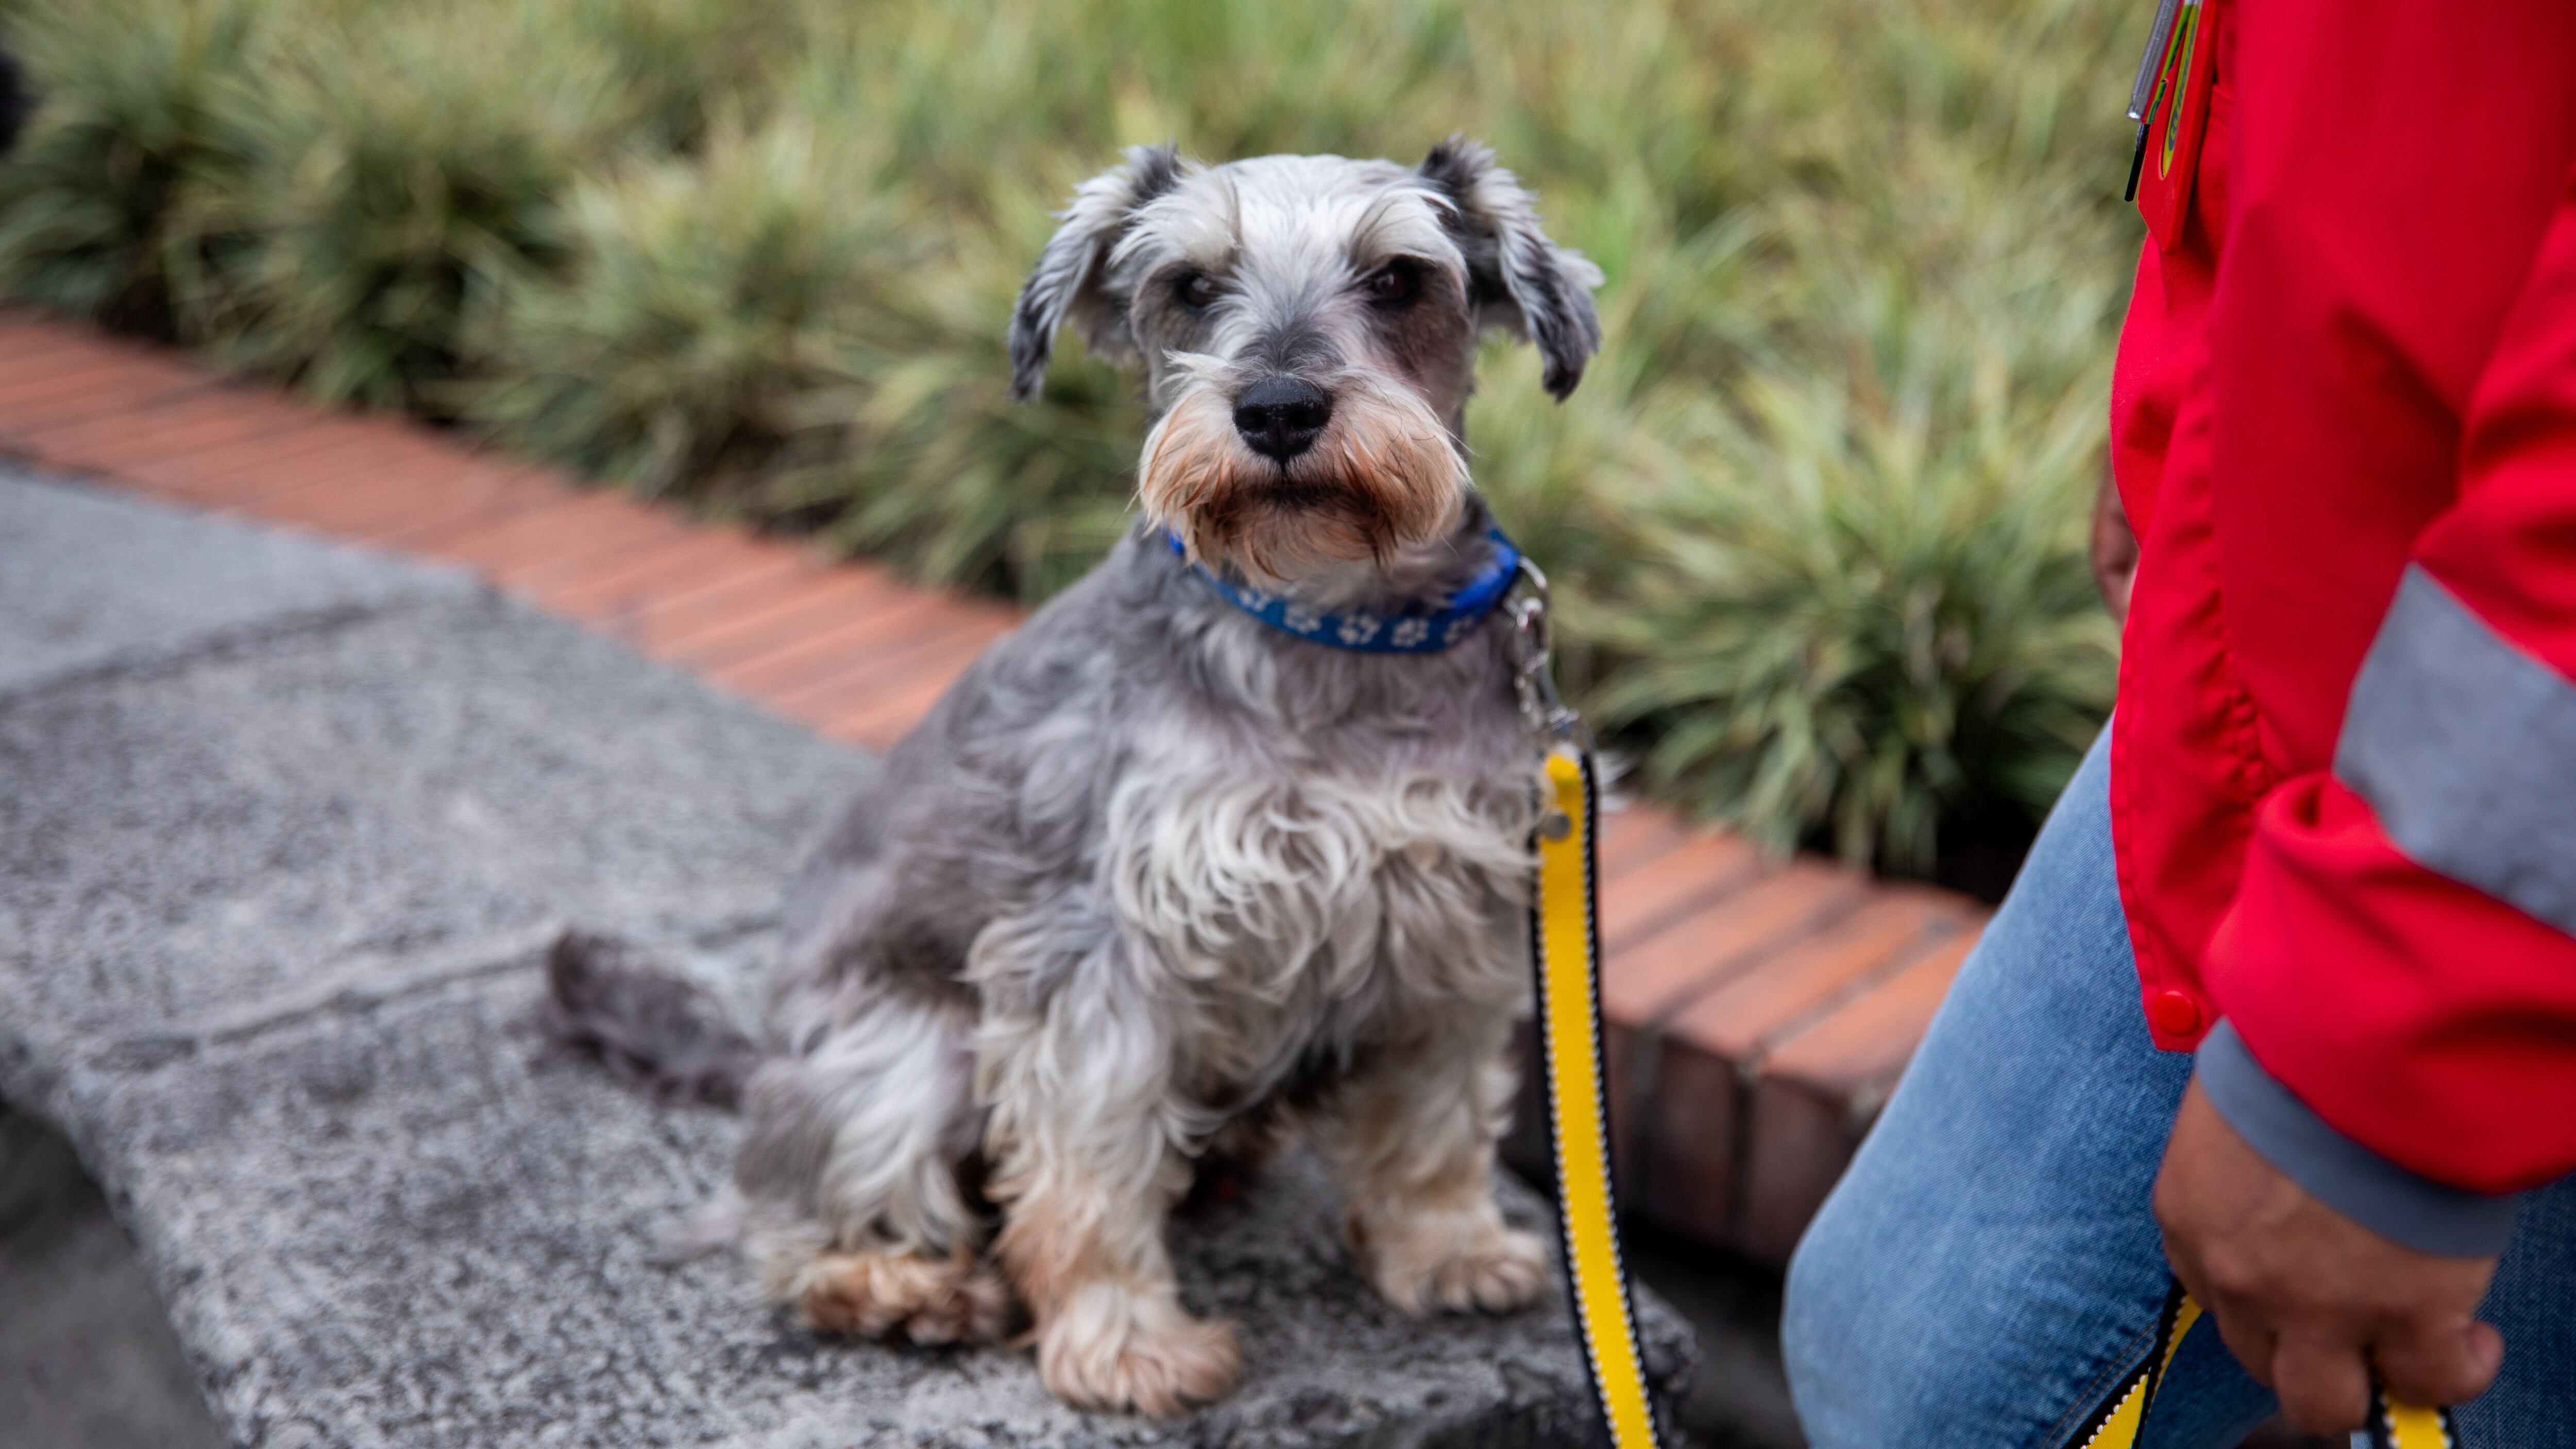 Cientos de perros en situación de calle esperan la oportunidad de tener un hogar amoroso para siempre - Pedigree y TransMilenio